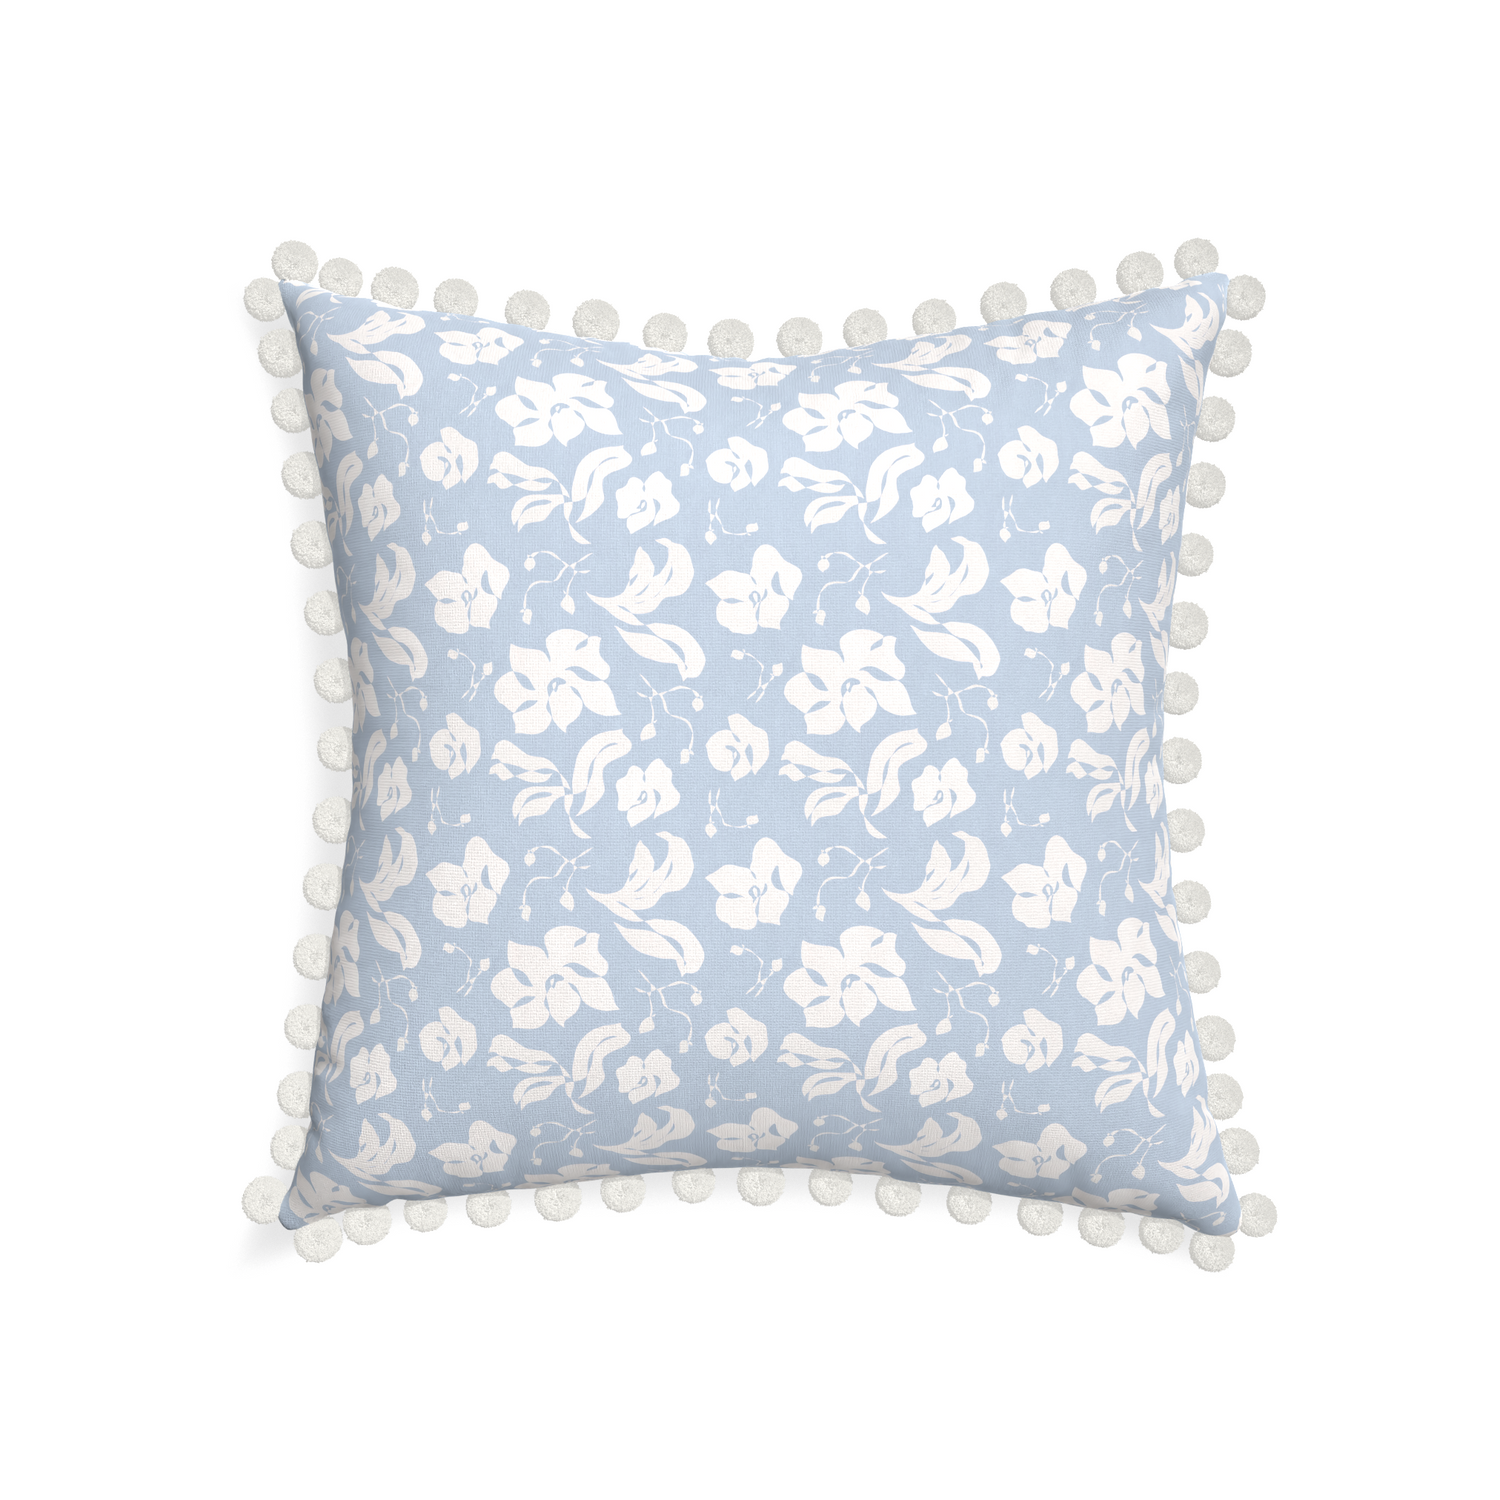 22-square georgia custom pillow with snow pom pom on white background